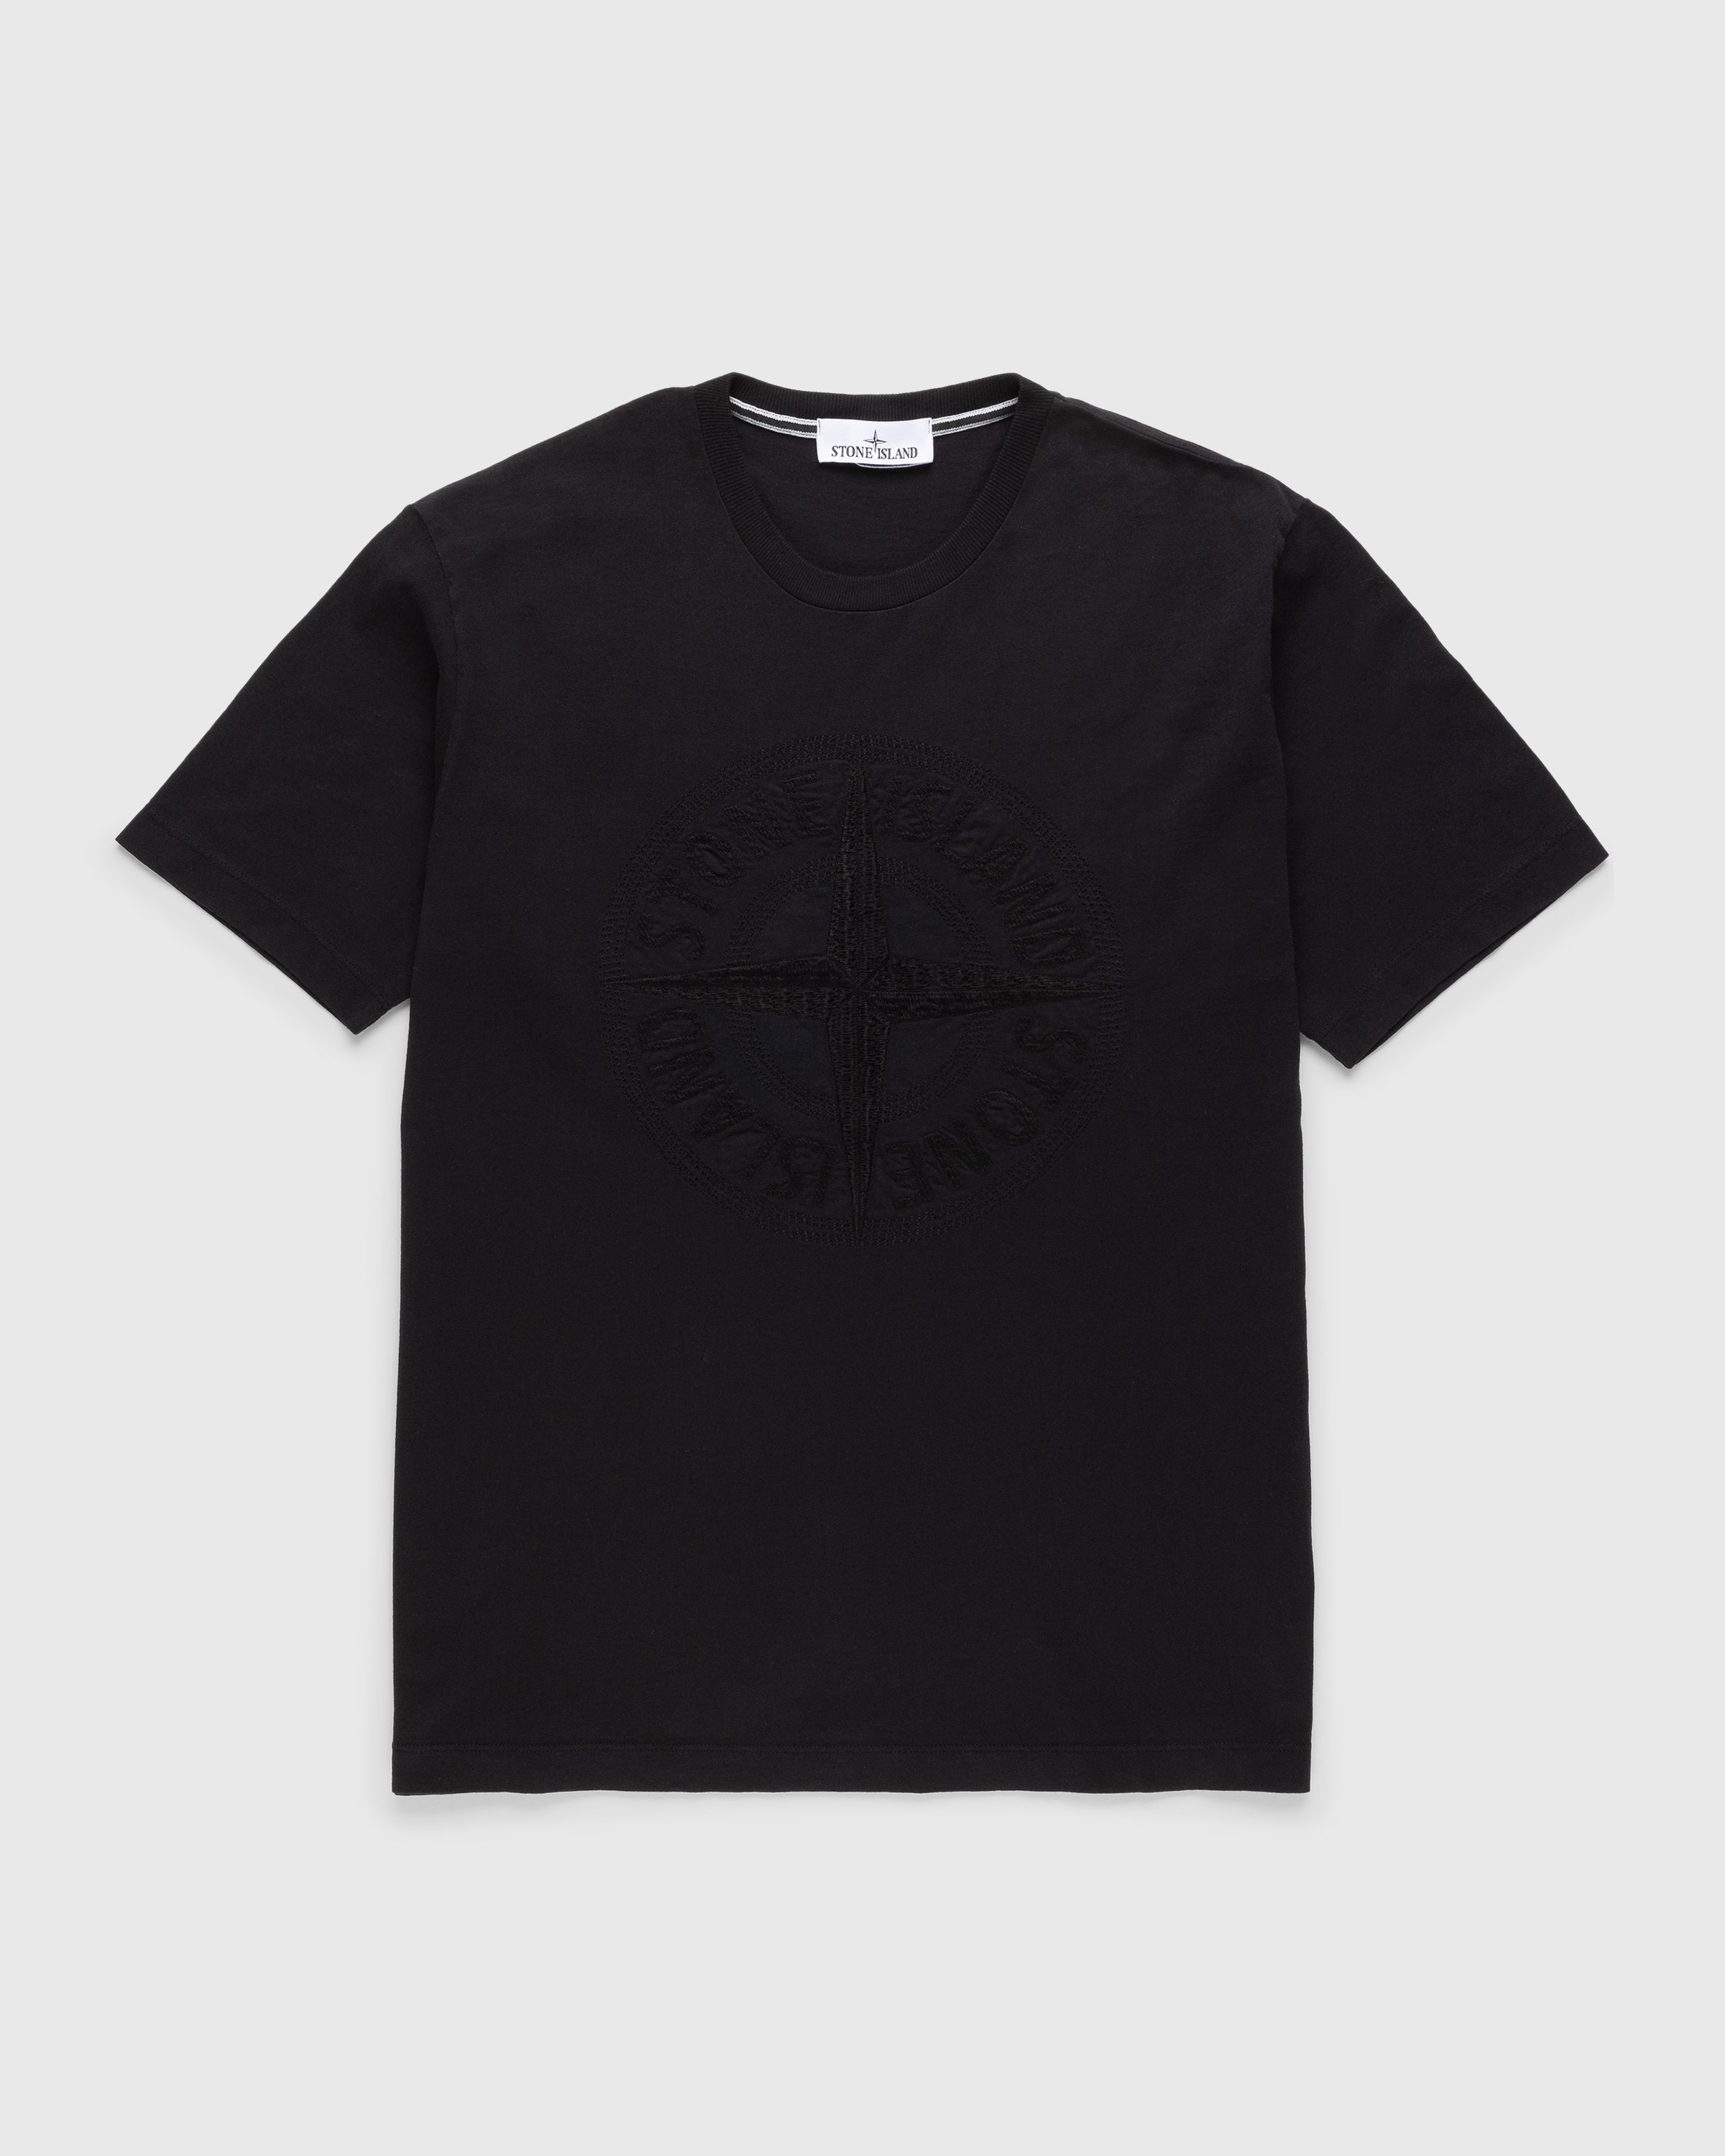 Stone Island - Compass Logo T-Shirt Black - Clothing - Black - Image 1